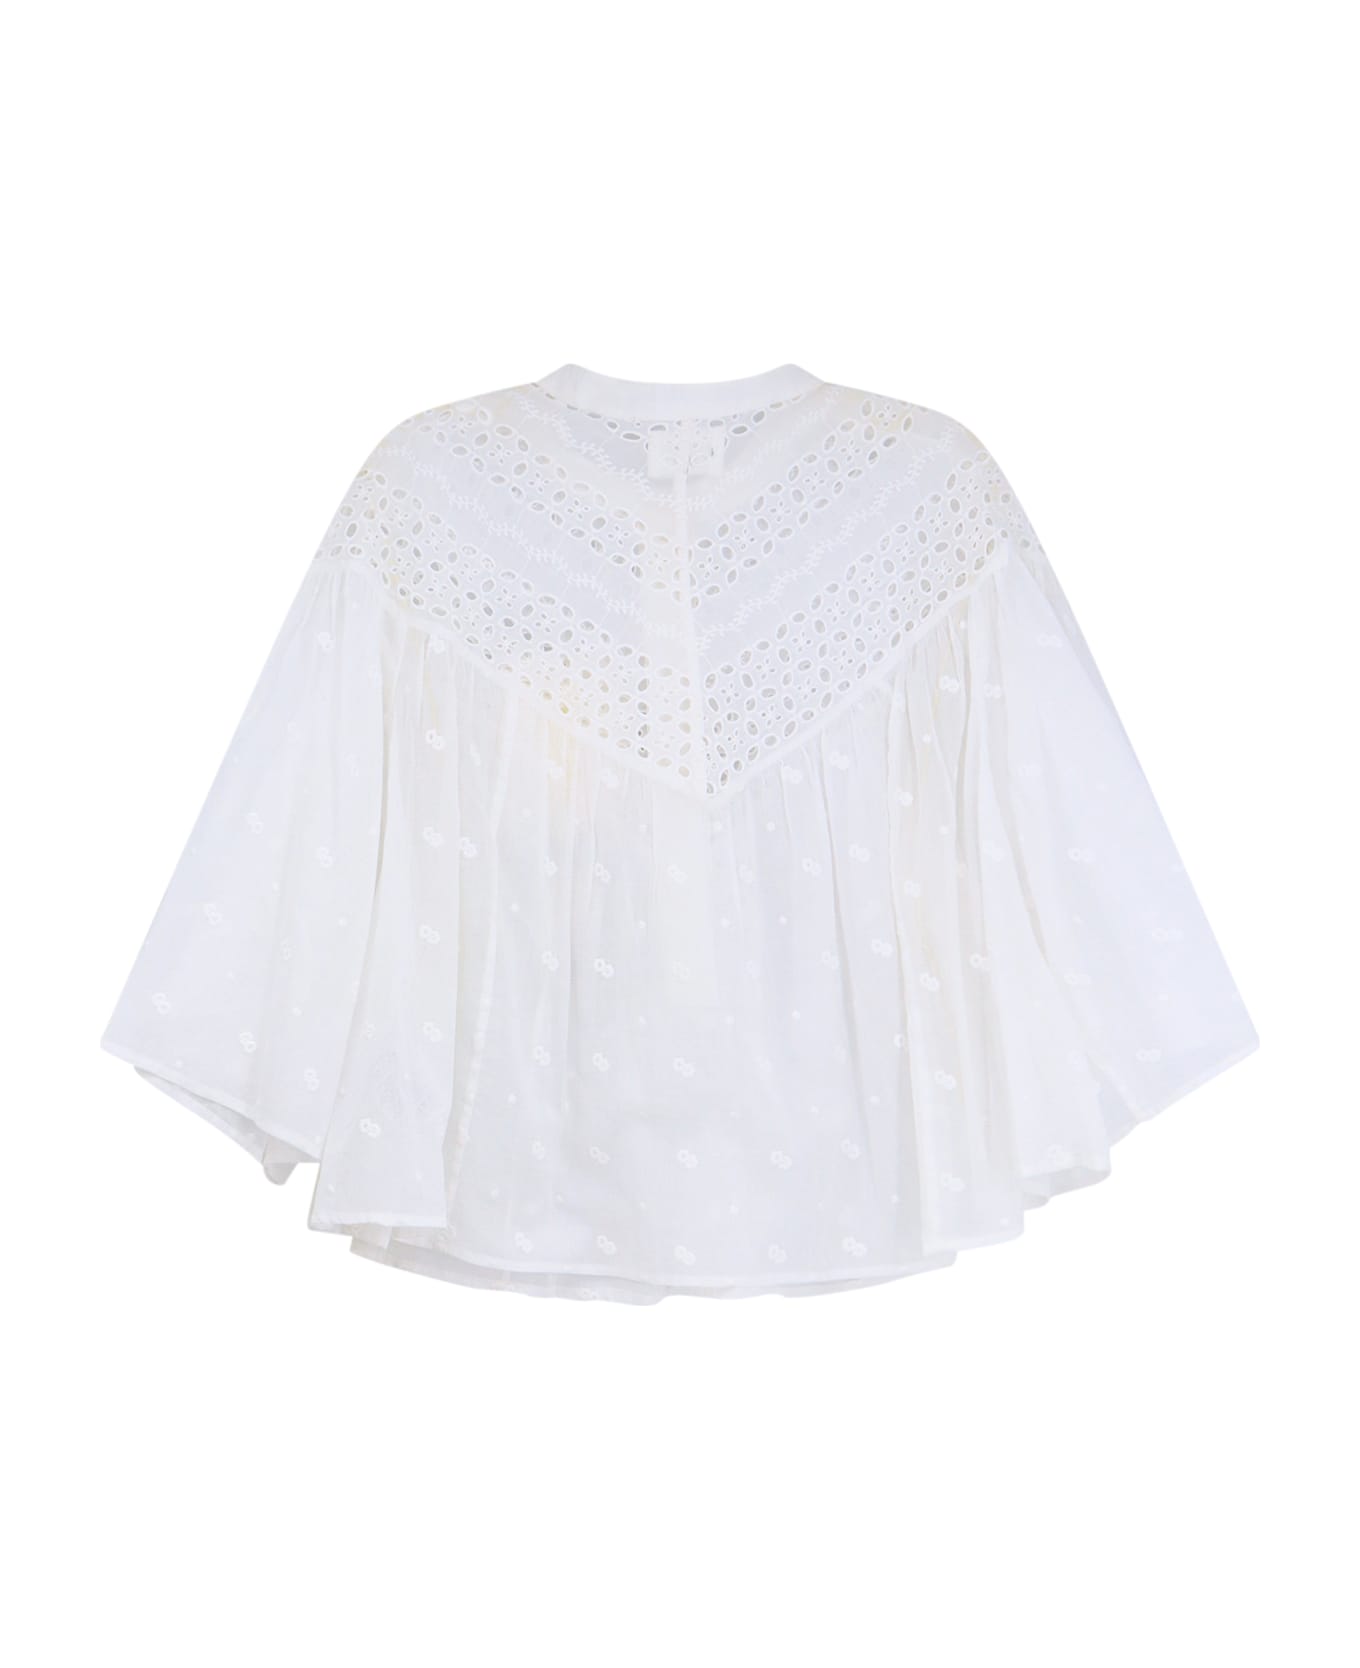 Marant Étoile Safi Shirt - White